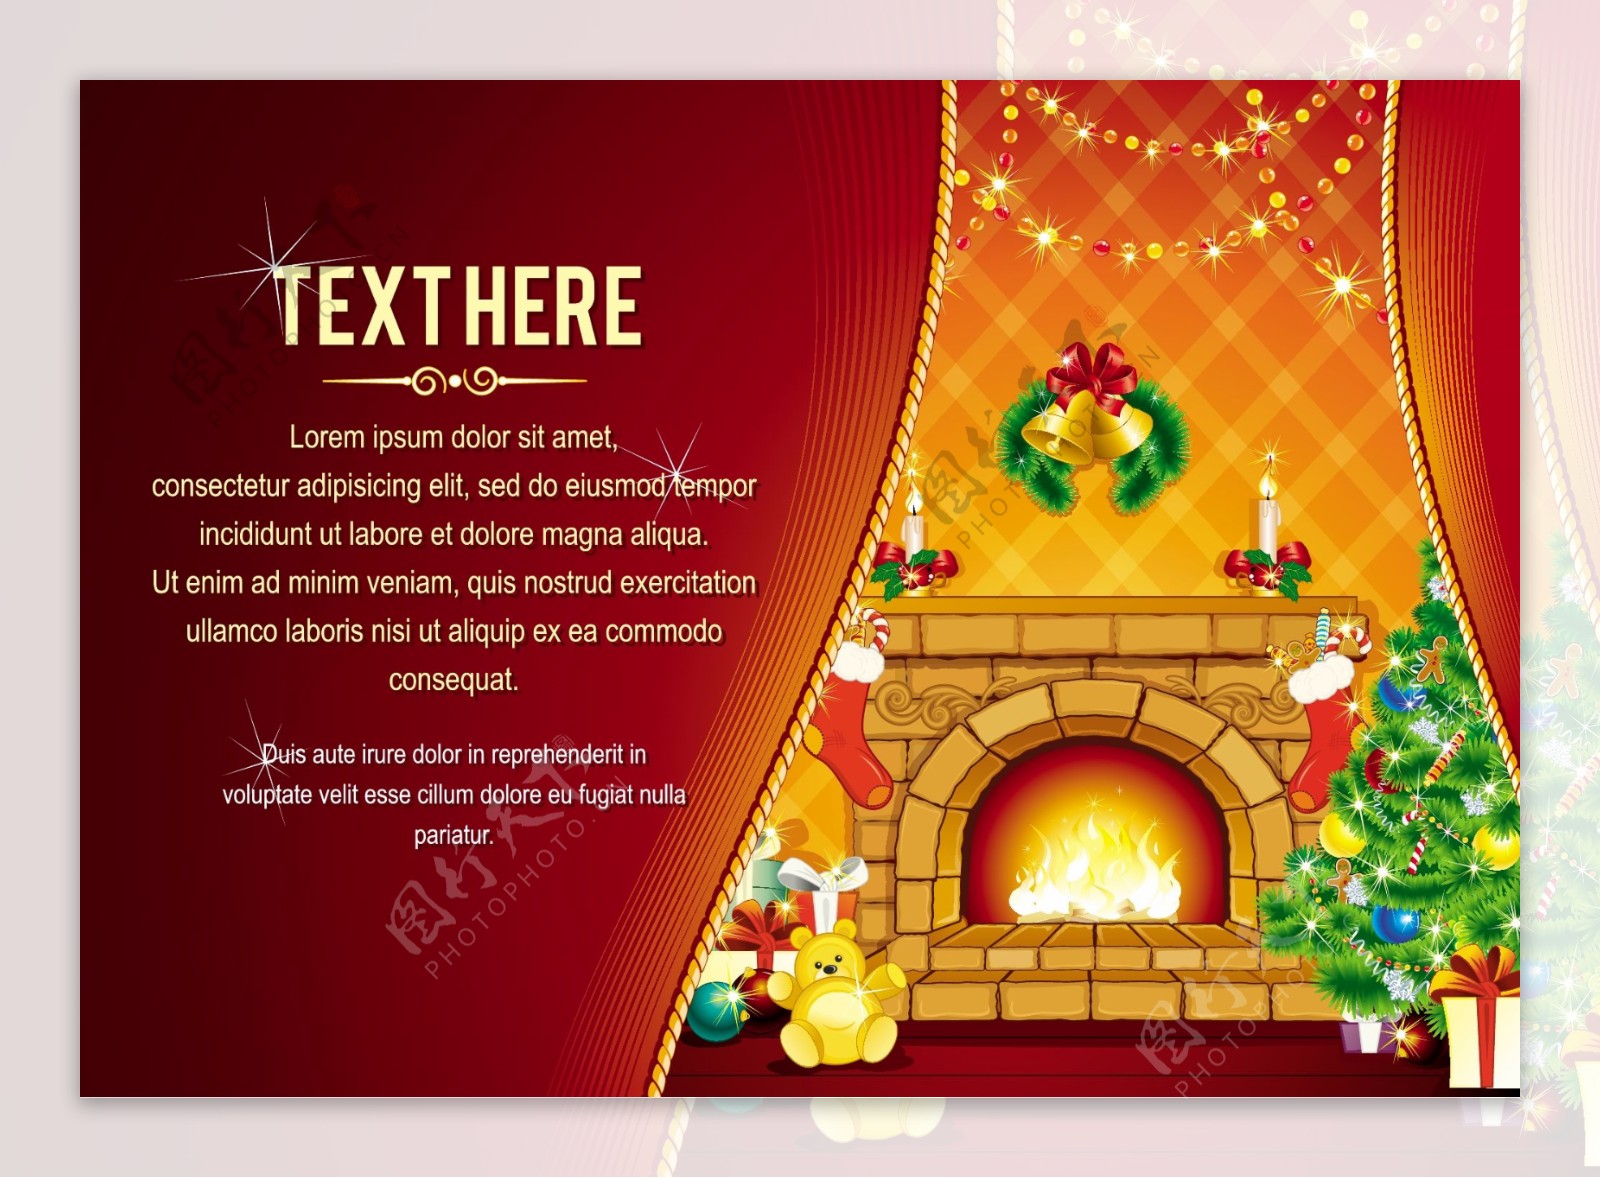 圣诞壁炉背景图片